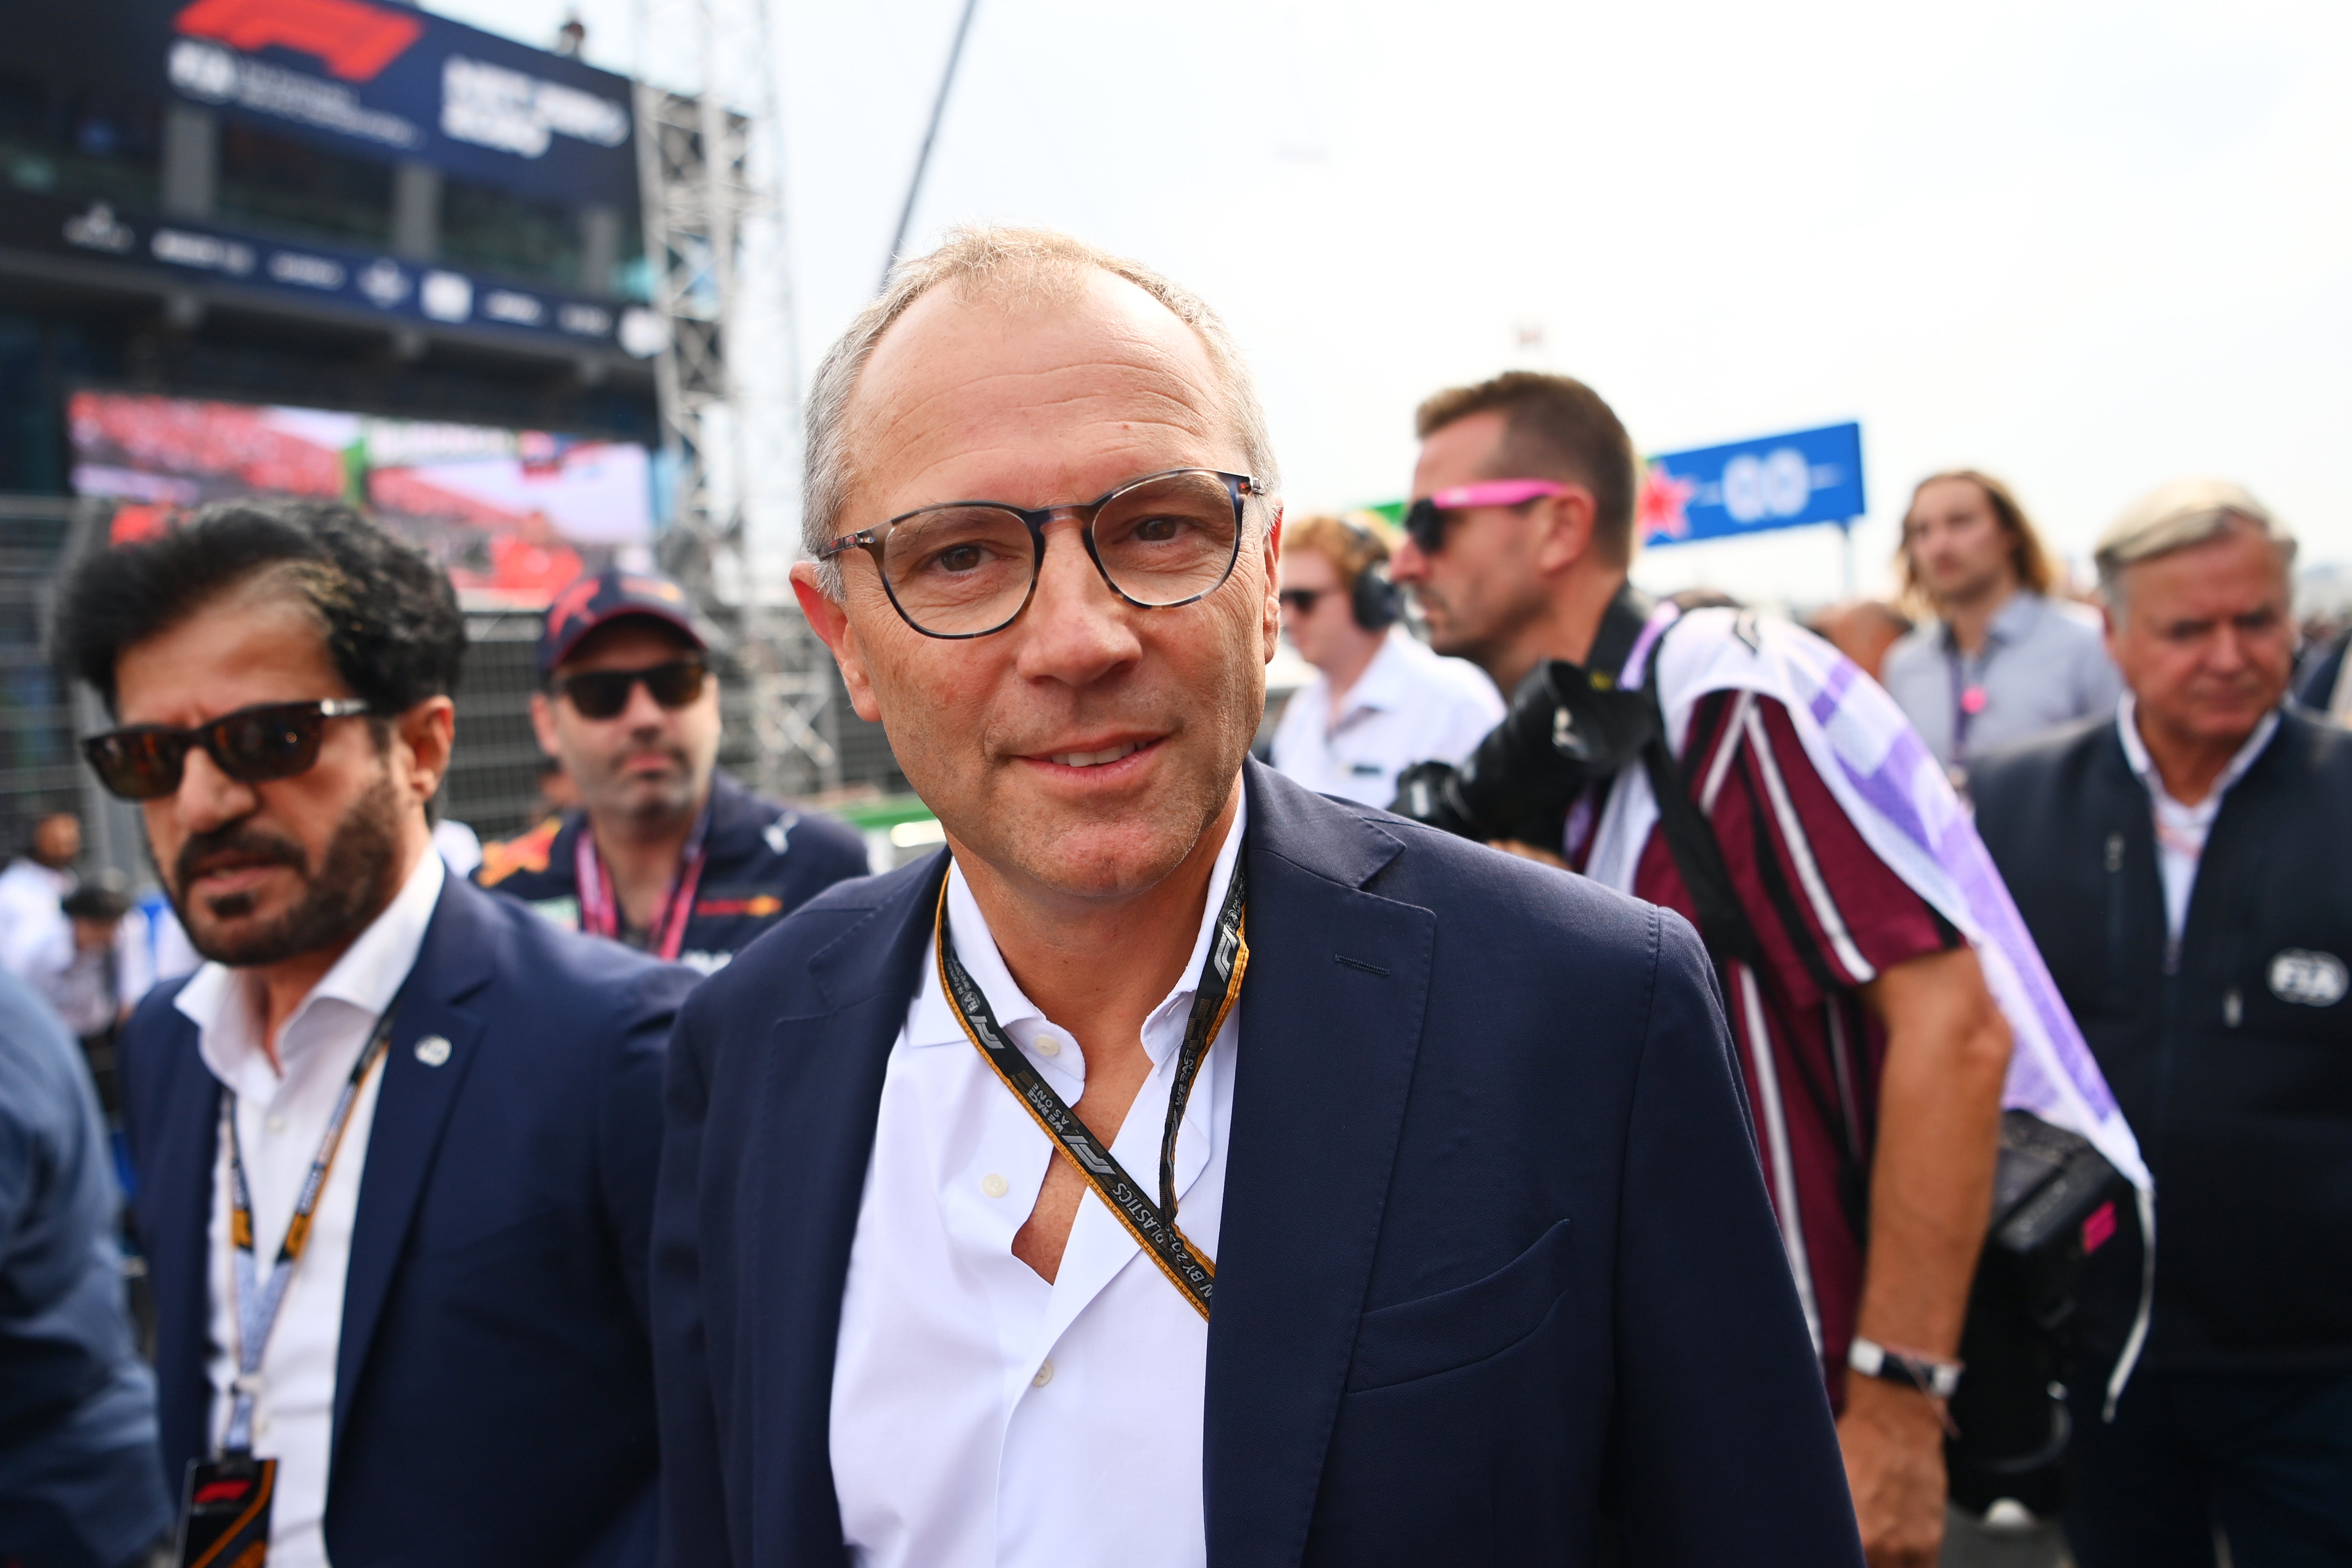 Monaco GP F1 race weekend format to change in 2022